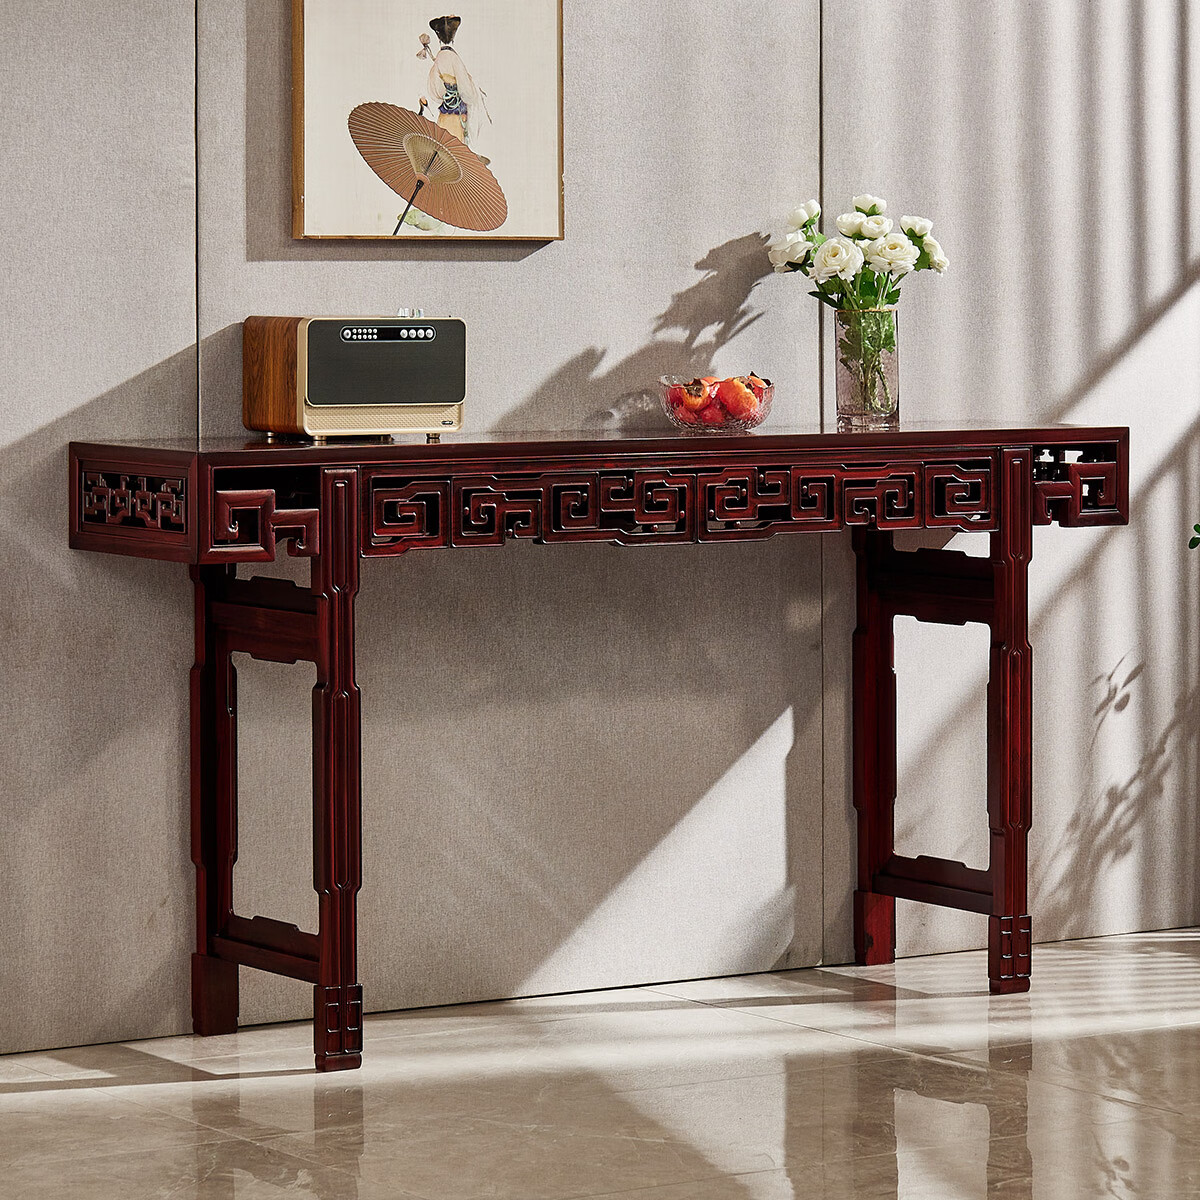 弗拉基米条案木平头案中式仿古供桌条几实木供台佛桌家具 1.8米条案 整装